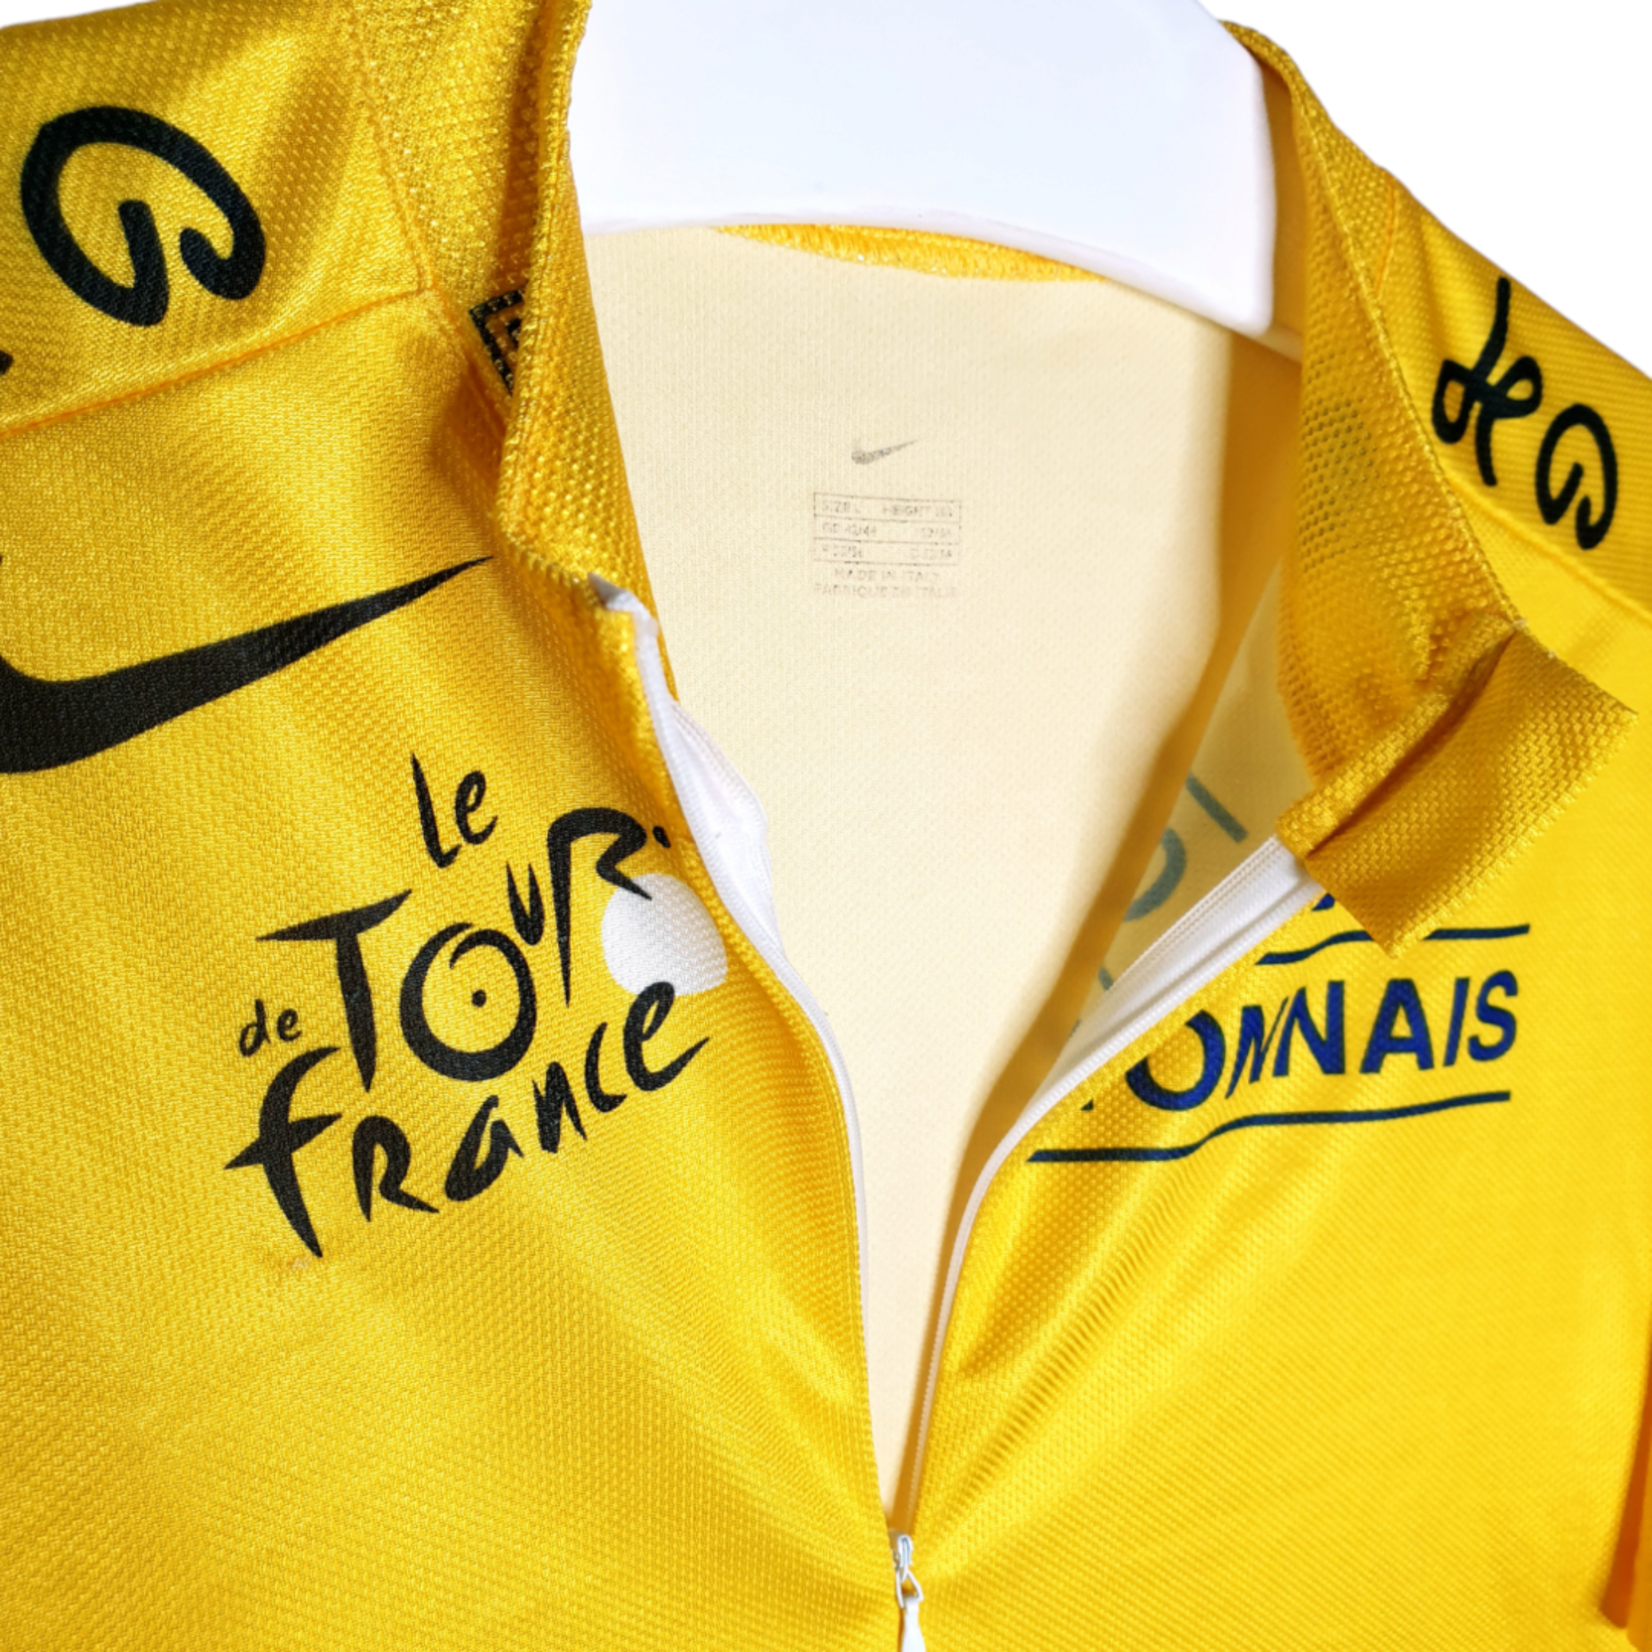 Nike Origineel Nike vintage wielershirt Tour de France 2004